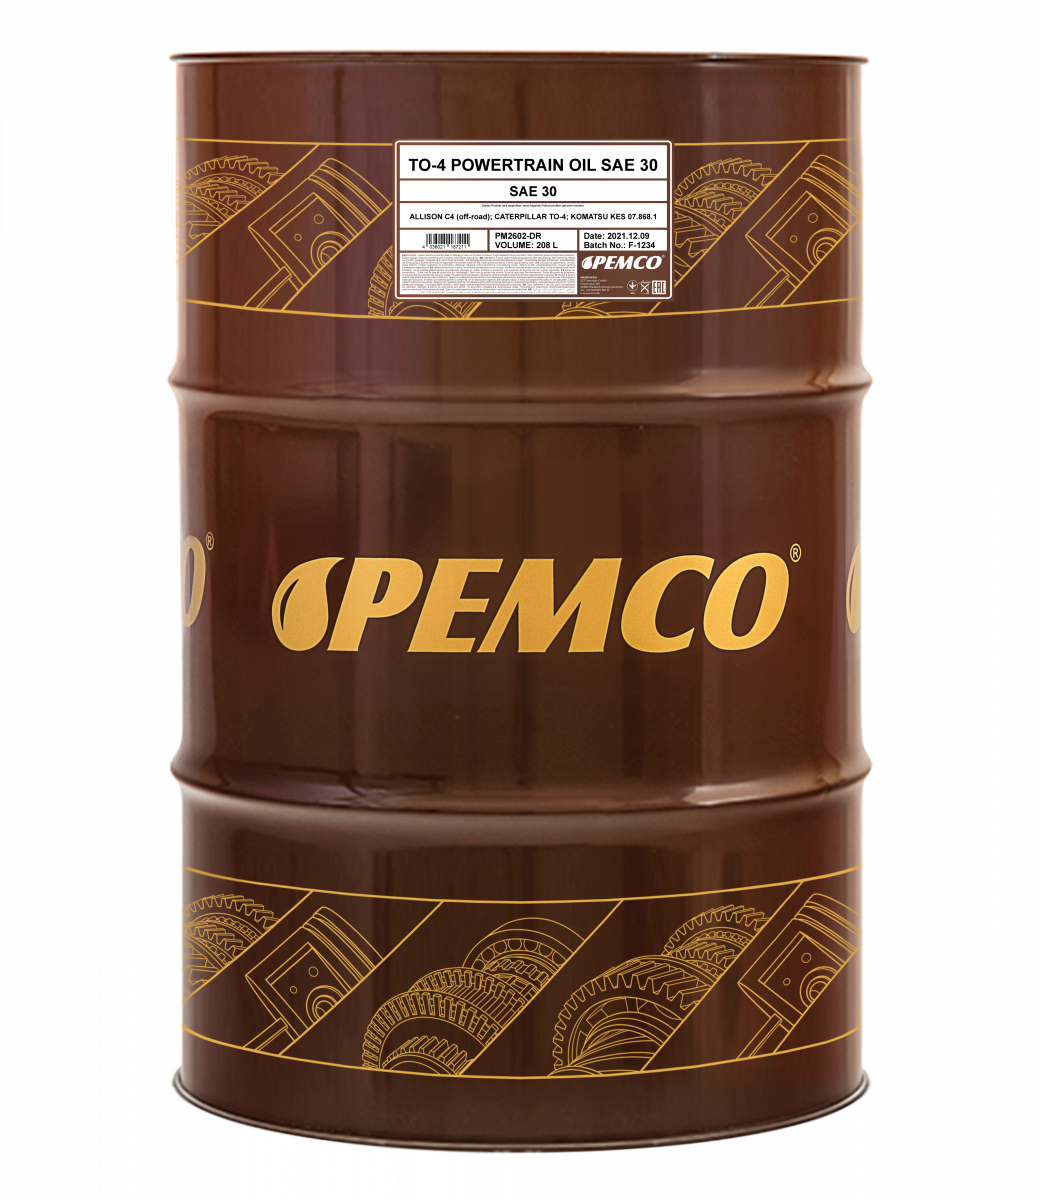 Гидравлическое масло PEMCO TO-4 Powertrain 30W минеральное, 208л (PM2602-DR)